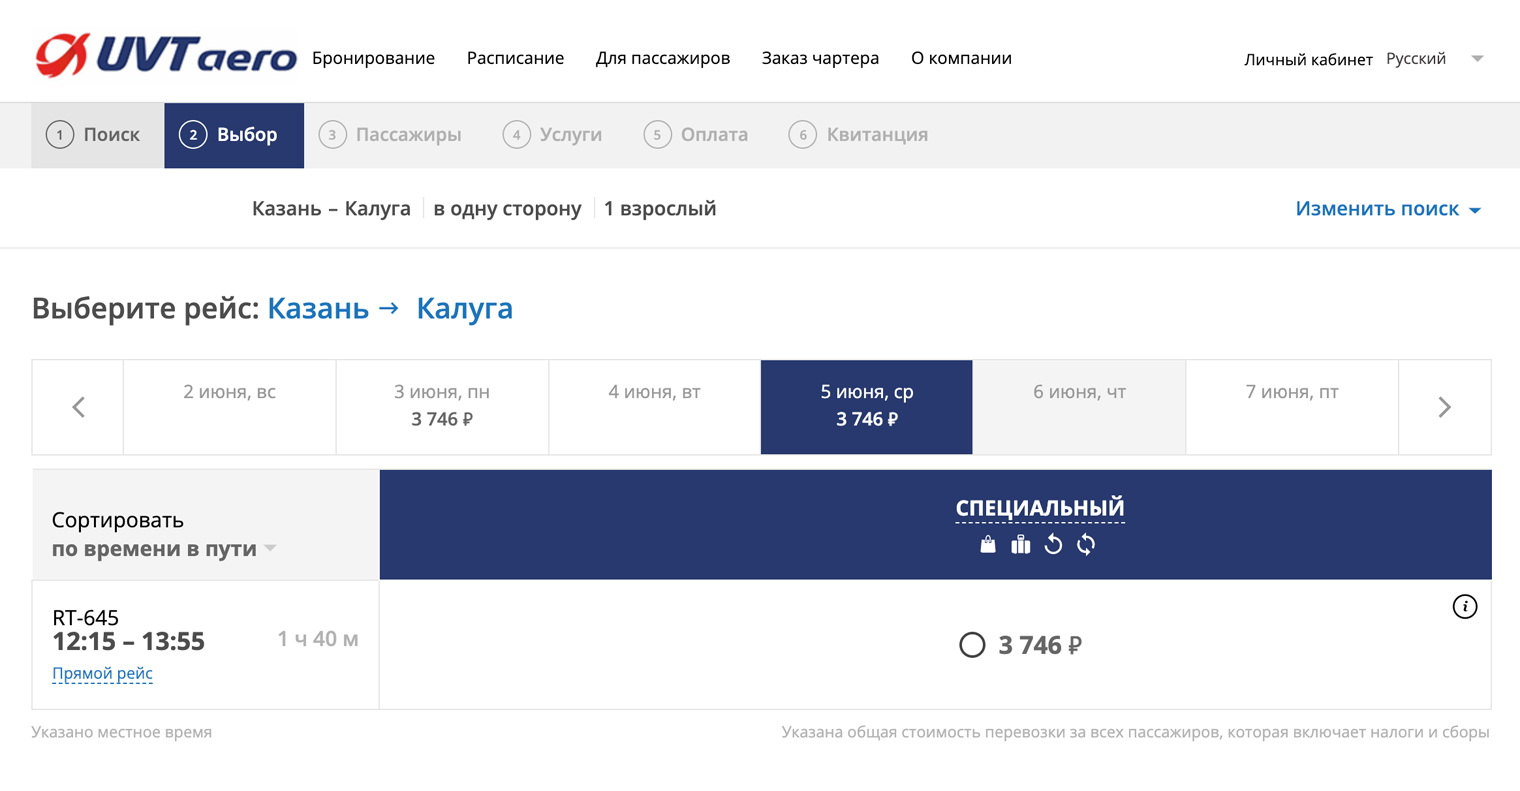 Субсидированный билет из Казани в Калугу на 5 июня стоит 3700 ₽. Источник: uvtaero.ru